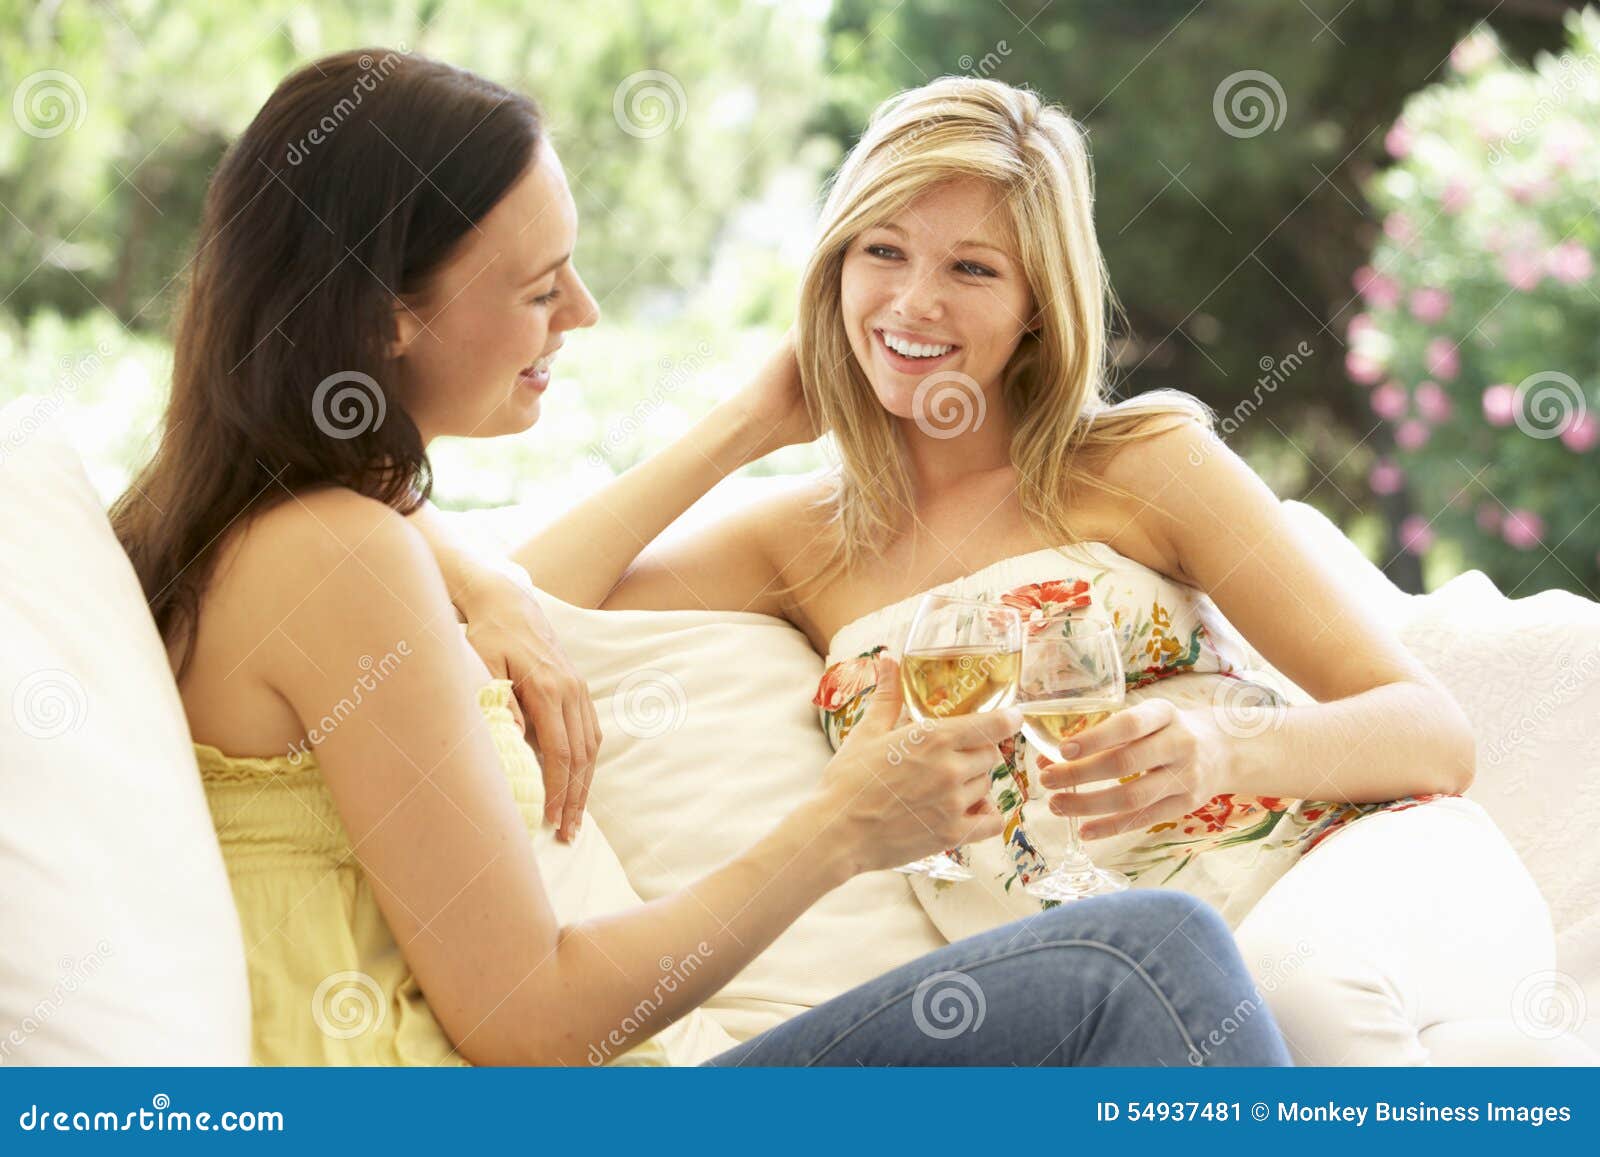 Расслабься подруга. Подруги расслабляются. Релакс с двумя женщинами. Помогла подружке расслабиться. Фото подруги с бокалами.